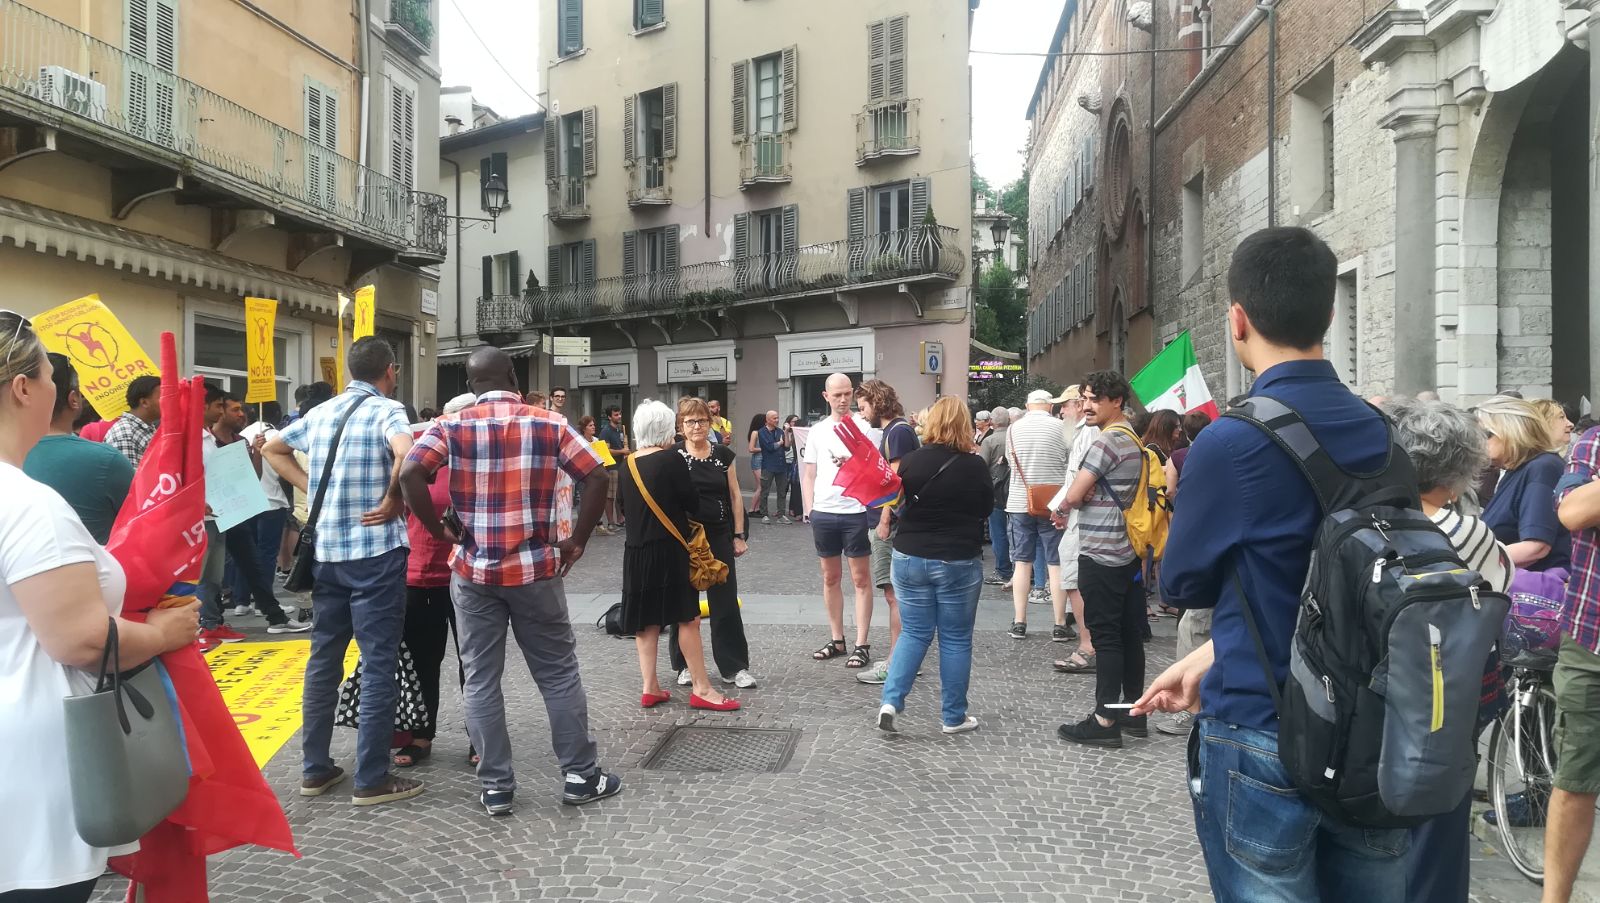 Aquarius protesta Brescia